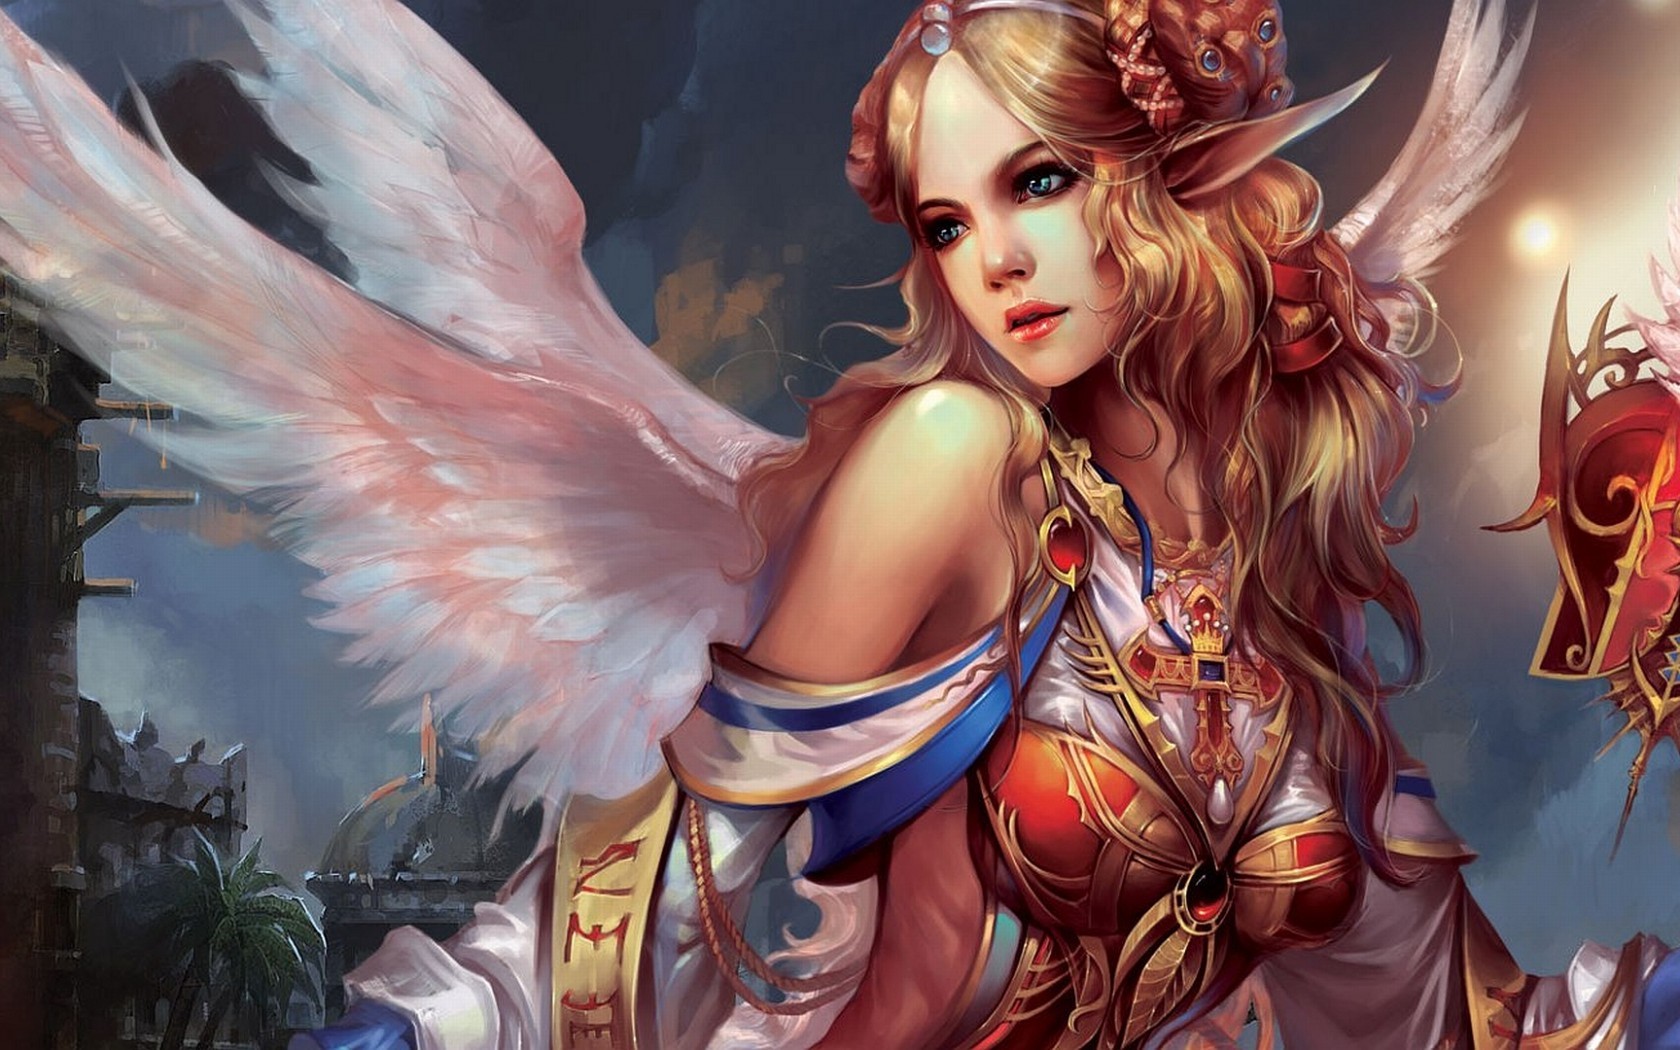 General 1680x1050 angel artwork fantasy art Forsaken World PC gaming video game art video game girls pointy ears blue eyes wings fantasy girl